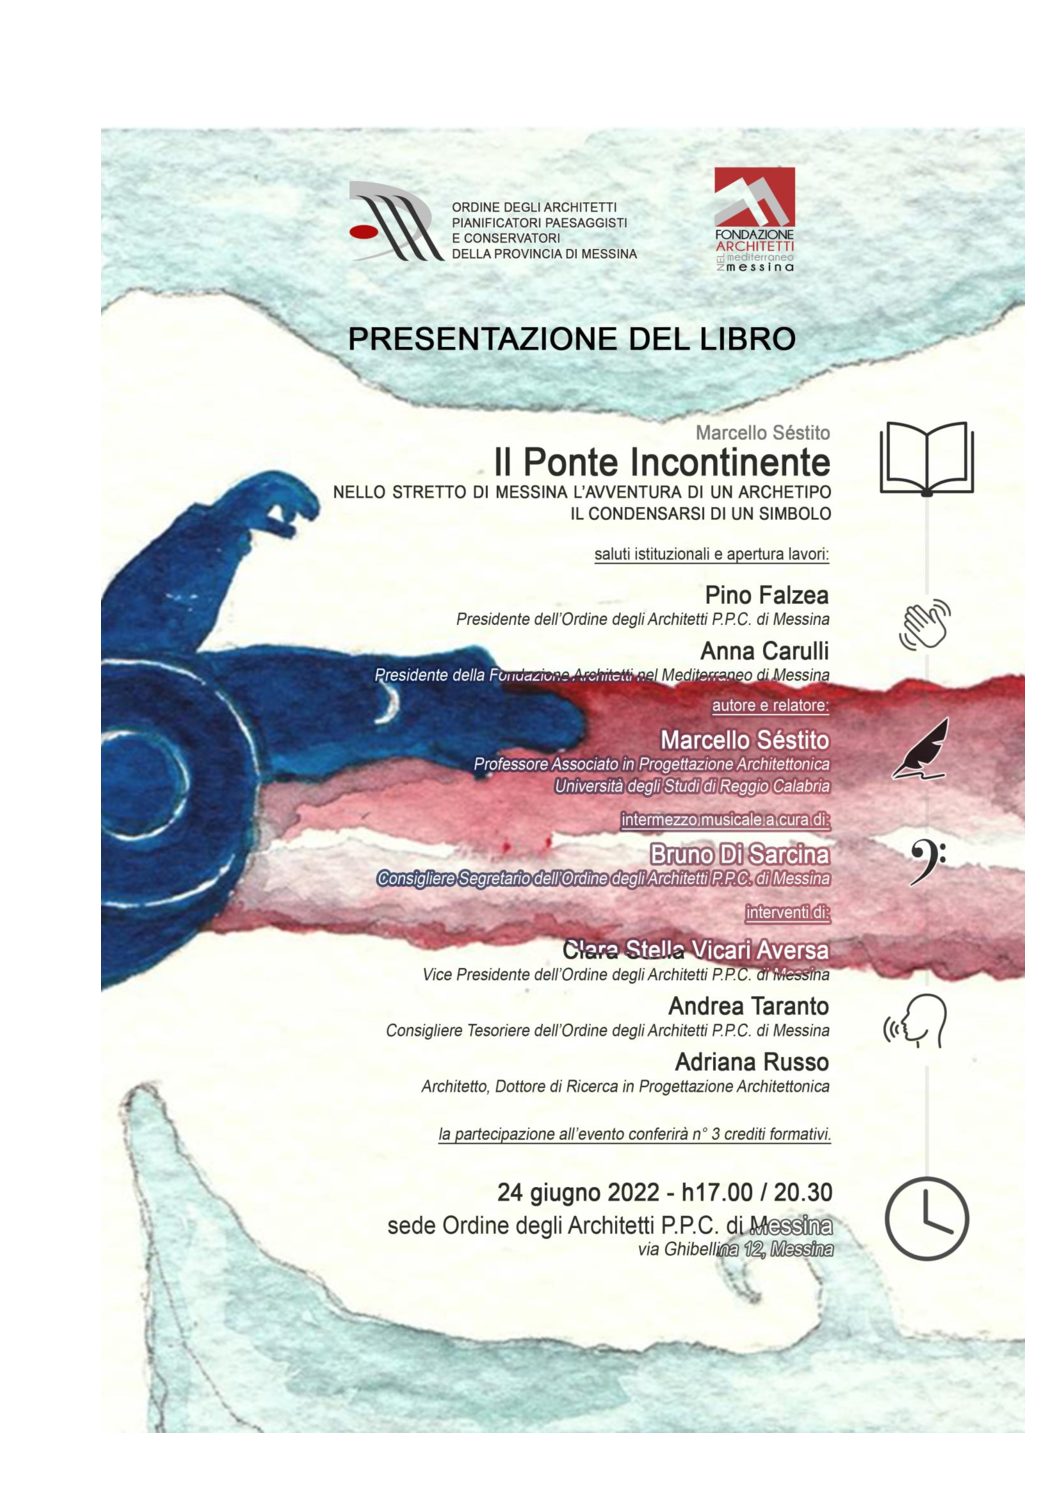 24 giugno alla sede dell’Ordine presentazione del libro”Il Ponte Incontinente nello stretto di Messina l’avventura di un archetipo, il condensarsi di un simbolo”